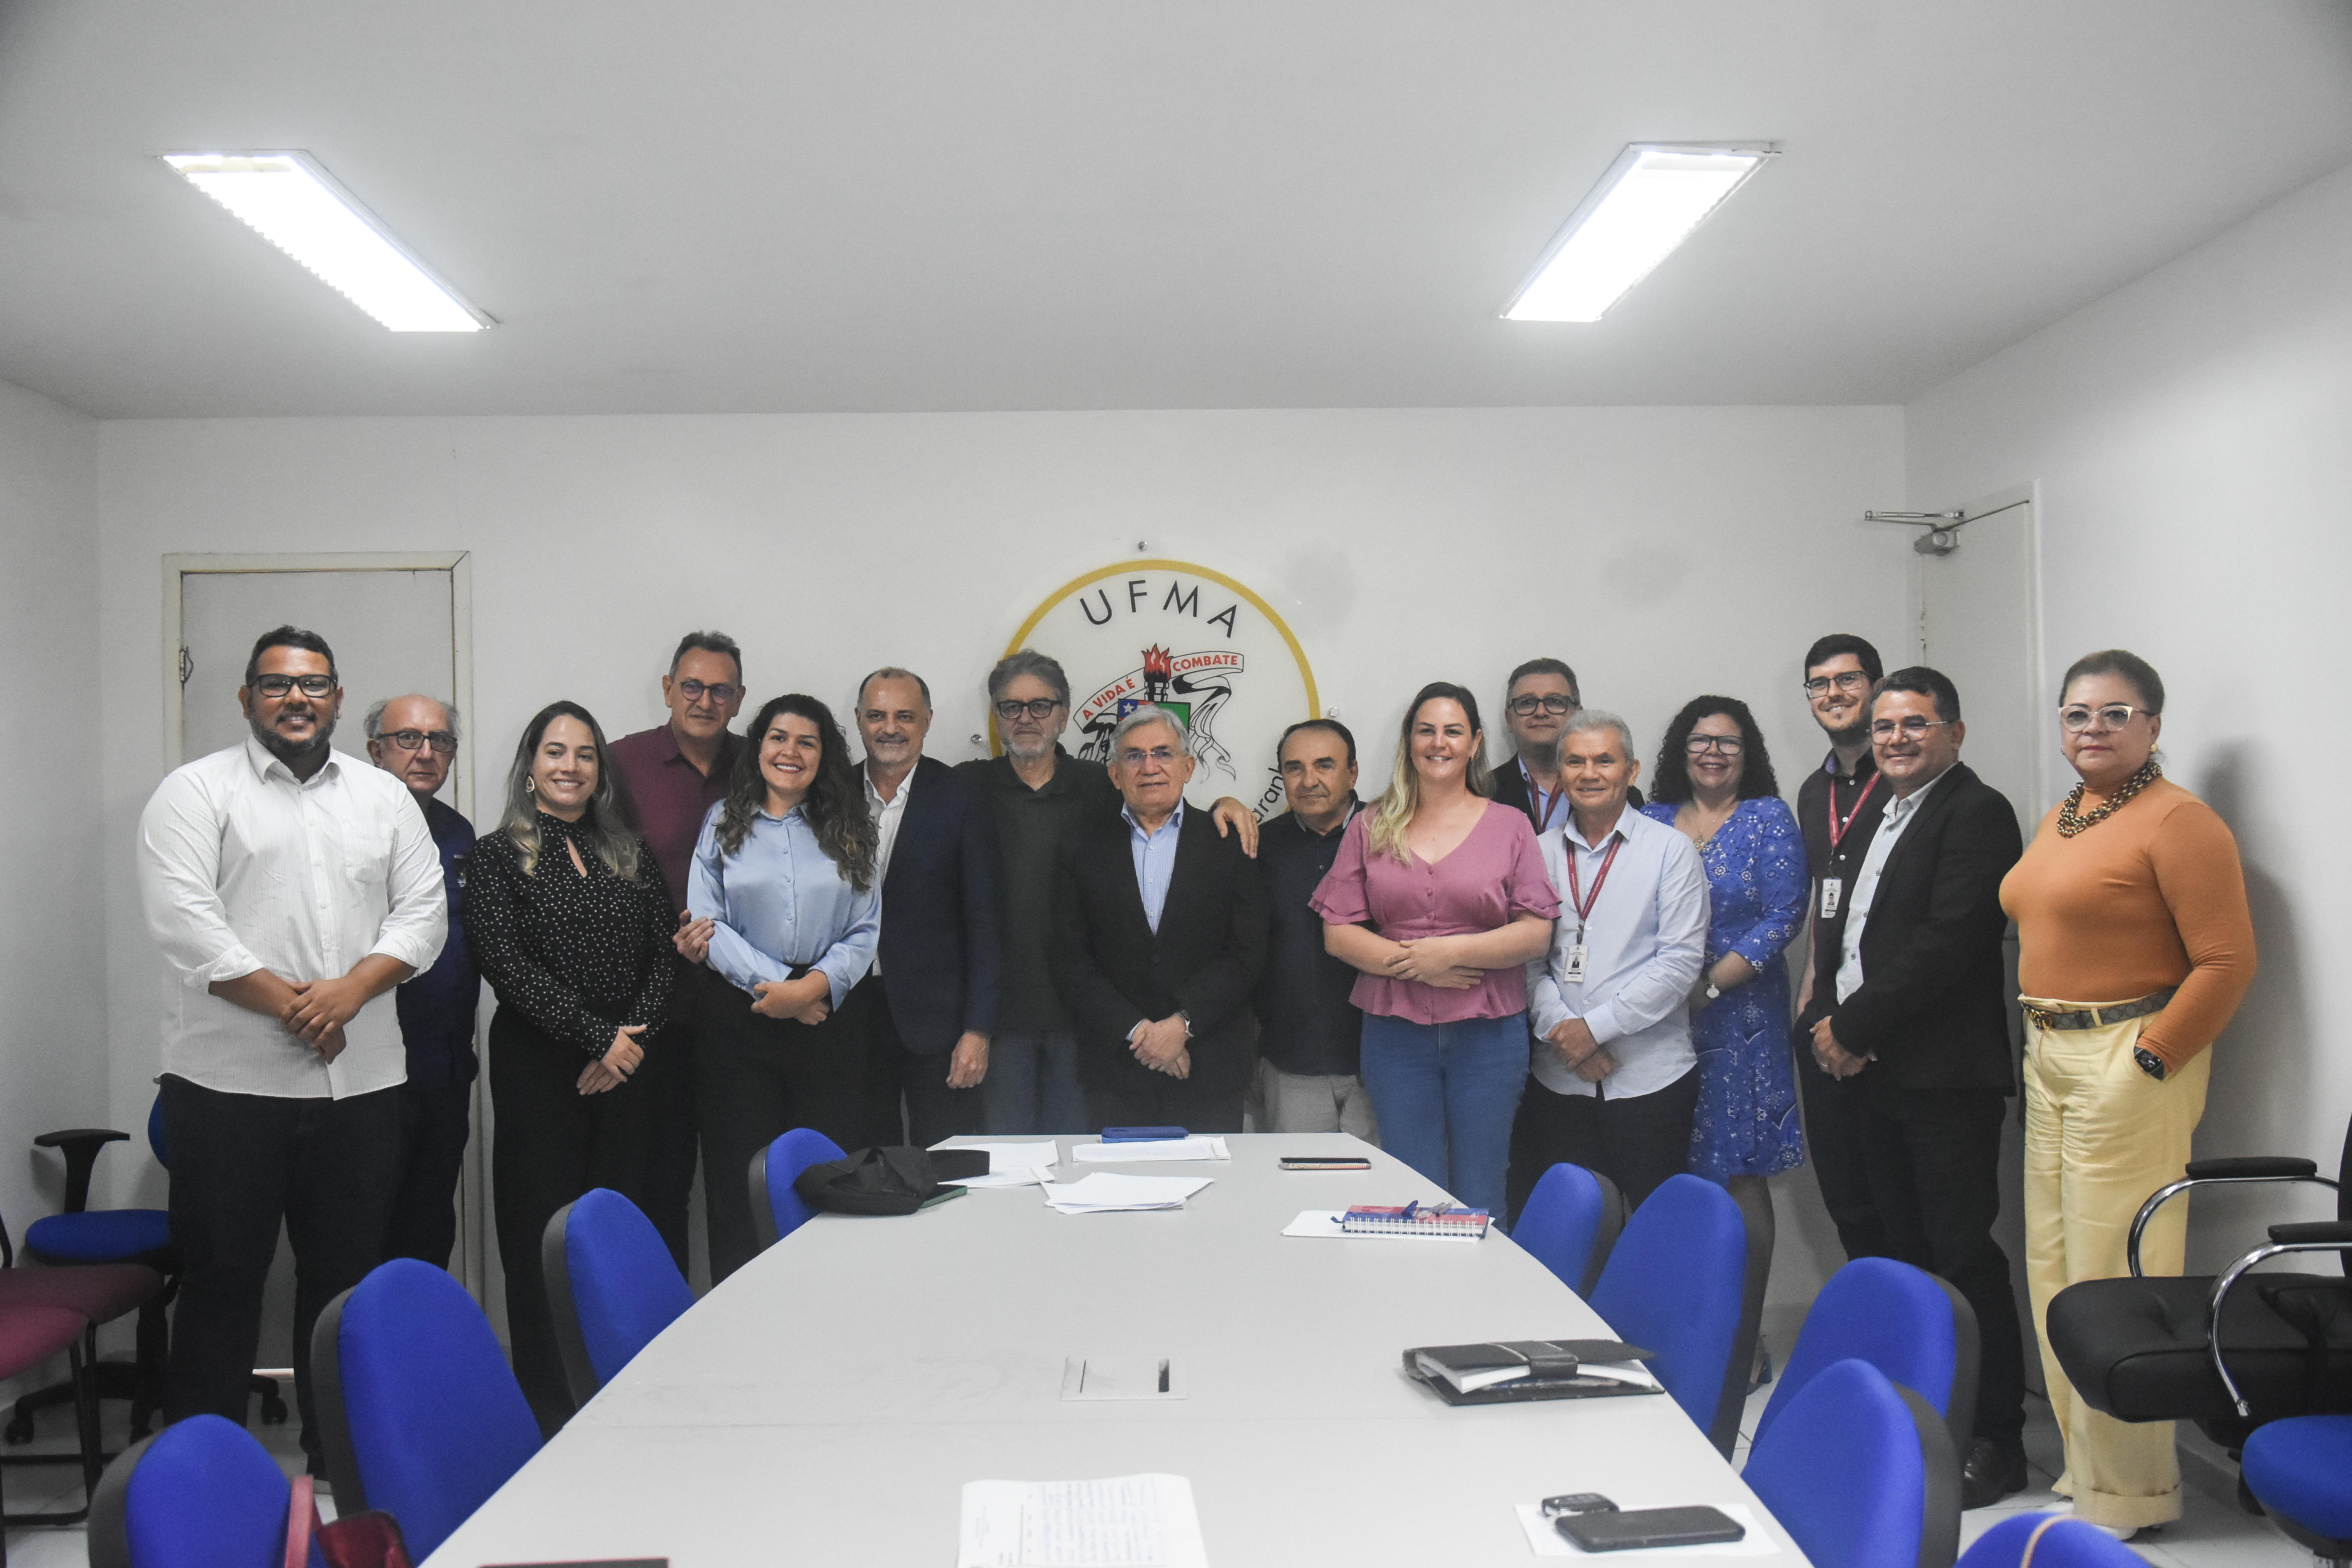 Reunião entre UFMA, governo do estado e empresários da indústria pesqueira discute desenvolvimento da pesca na região dos Guarás